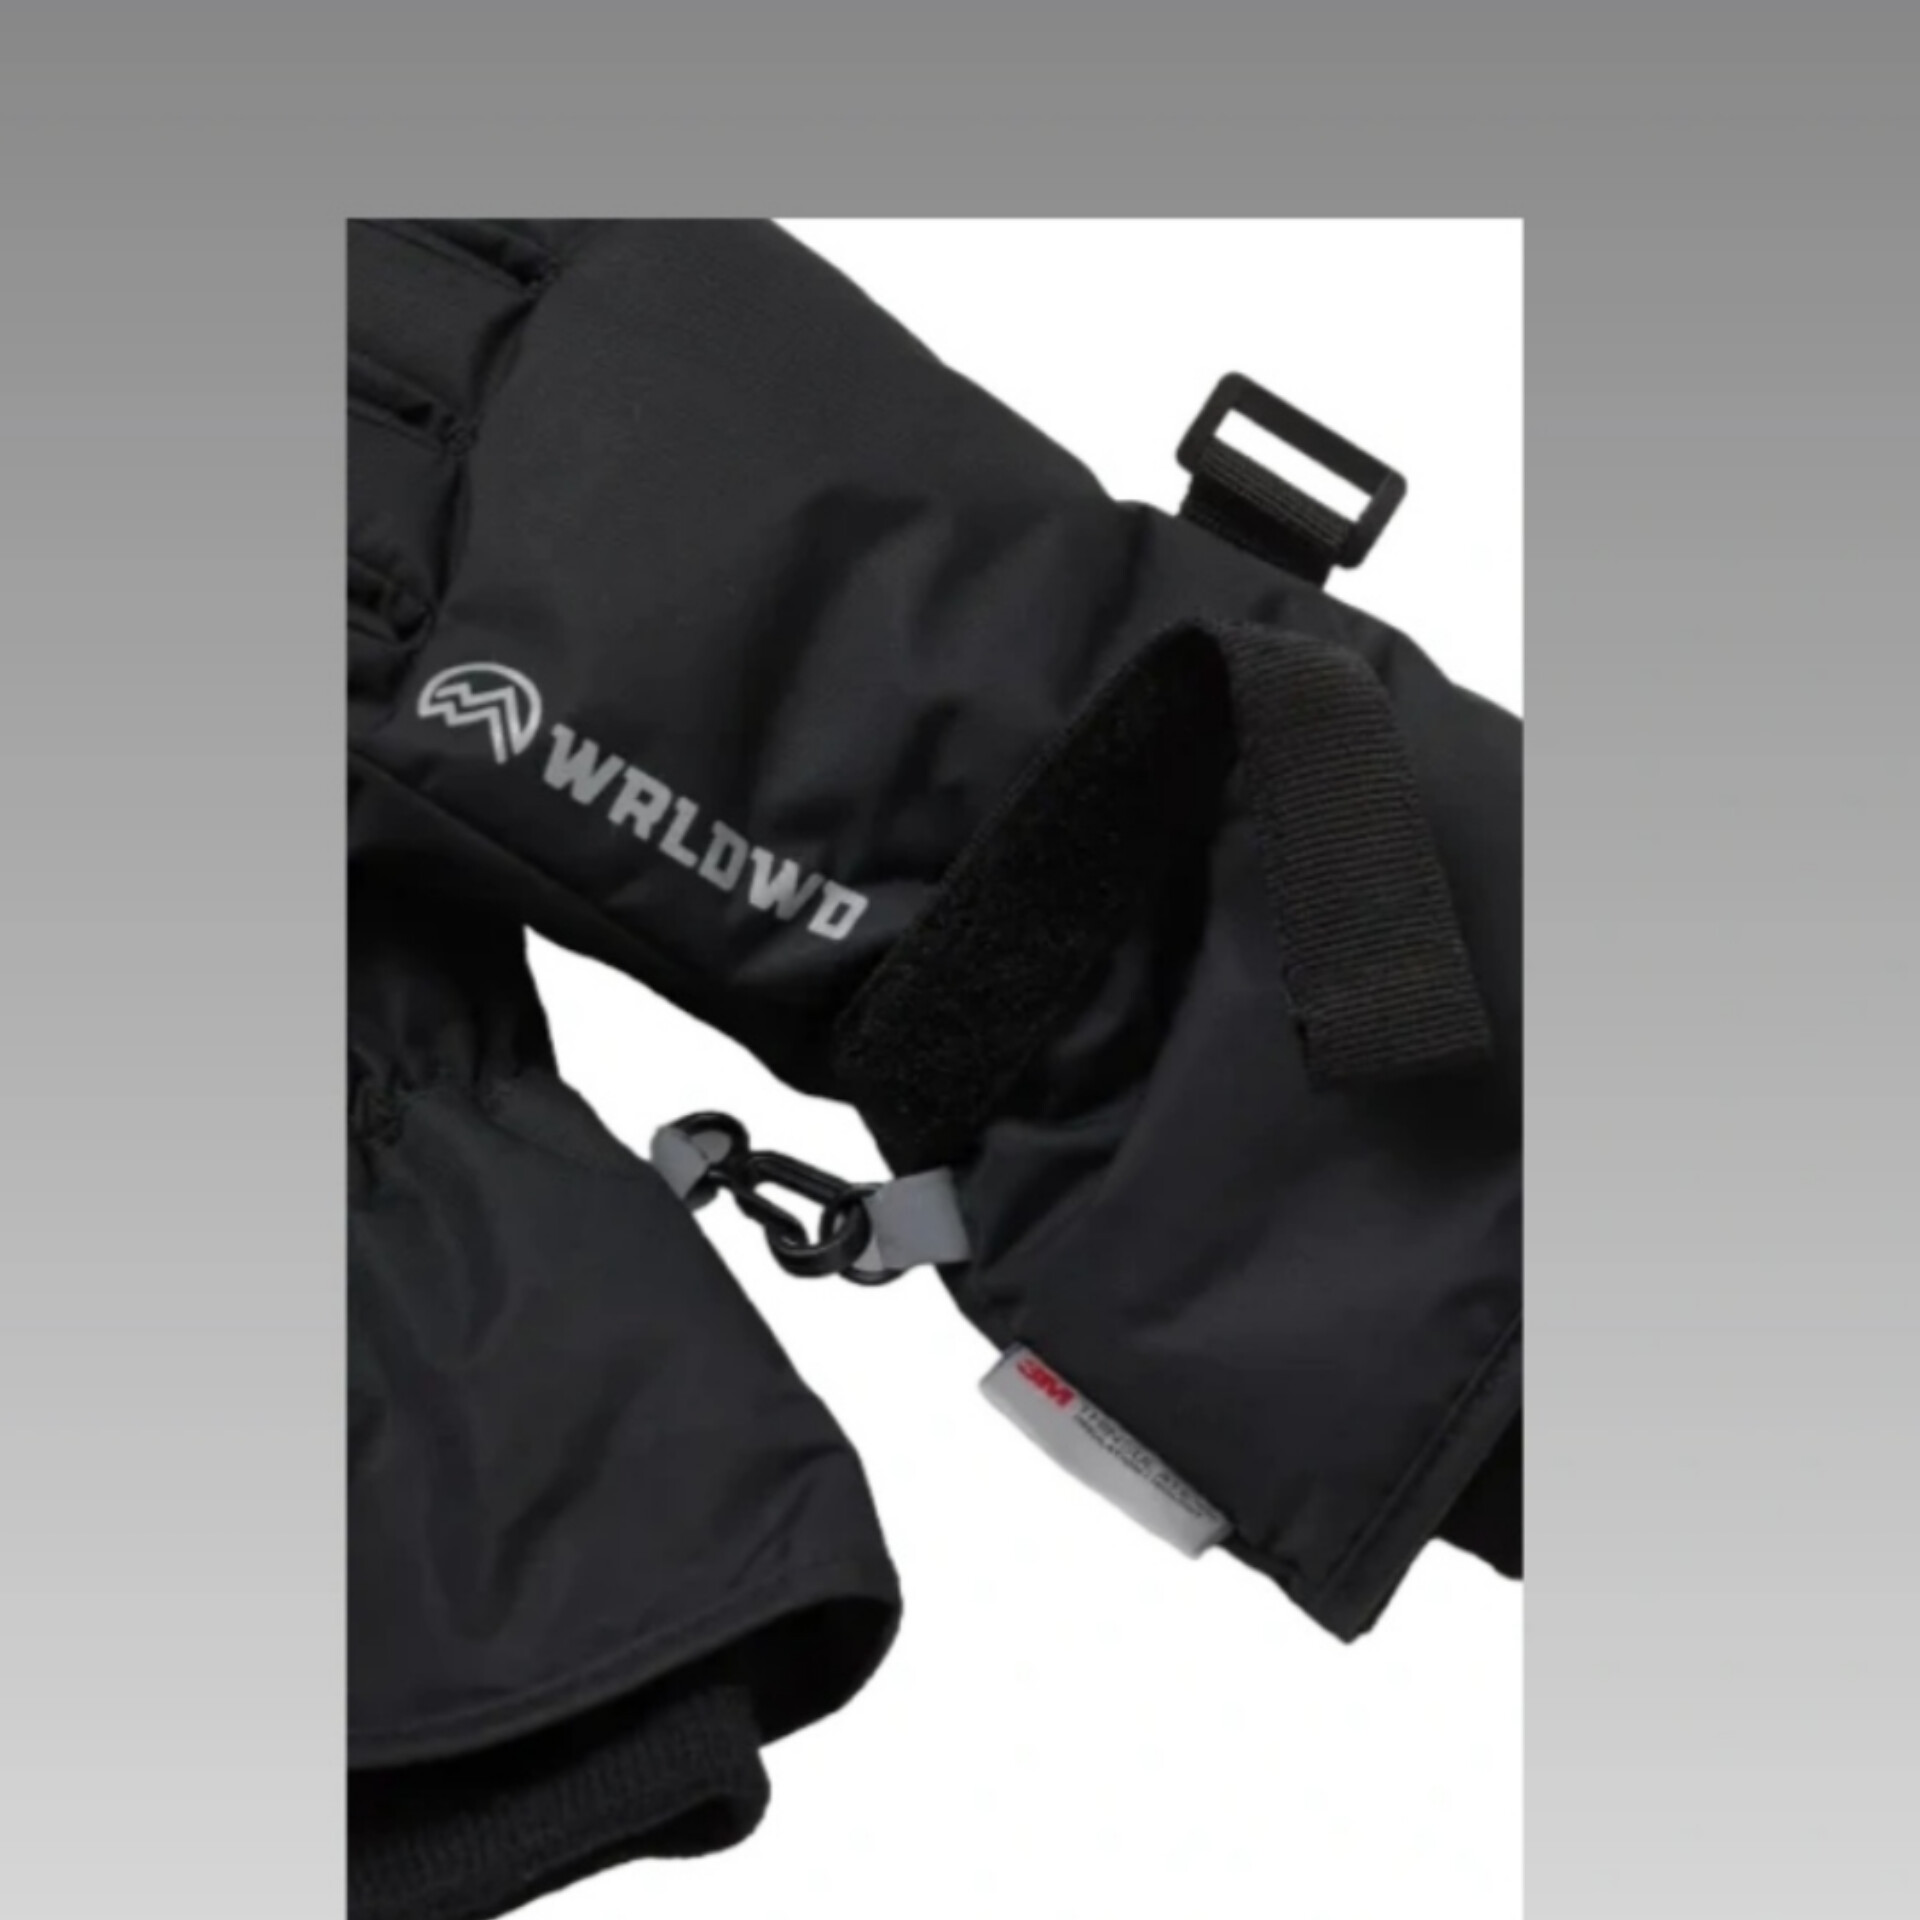 دستکش اسکی بچگانه ورلوو مدل W2025 -  - 5